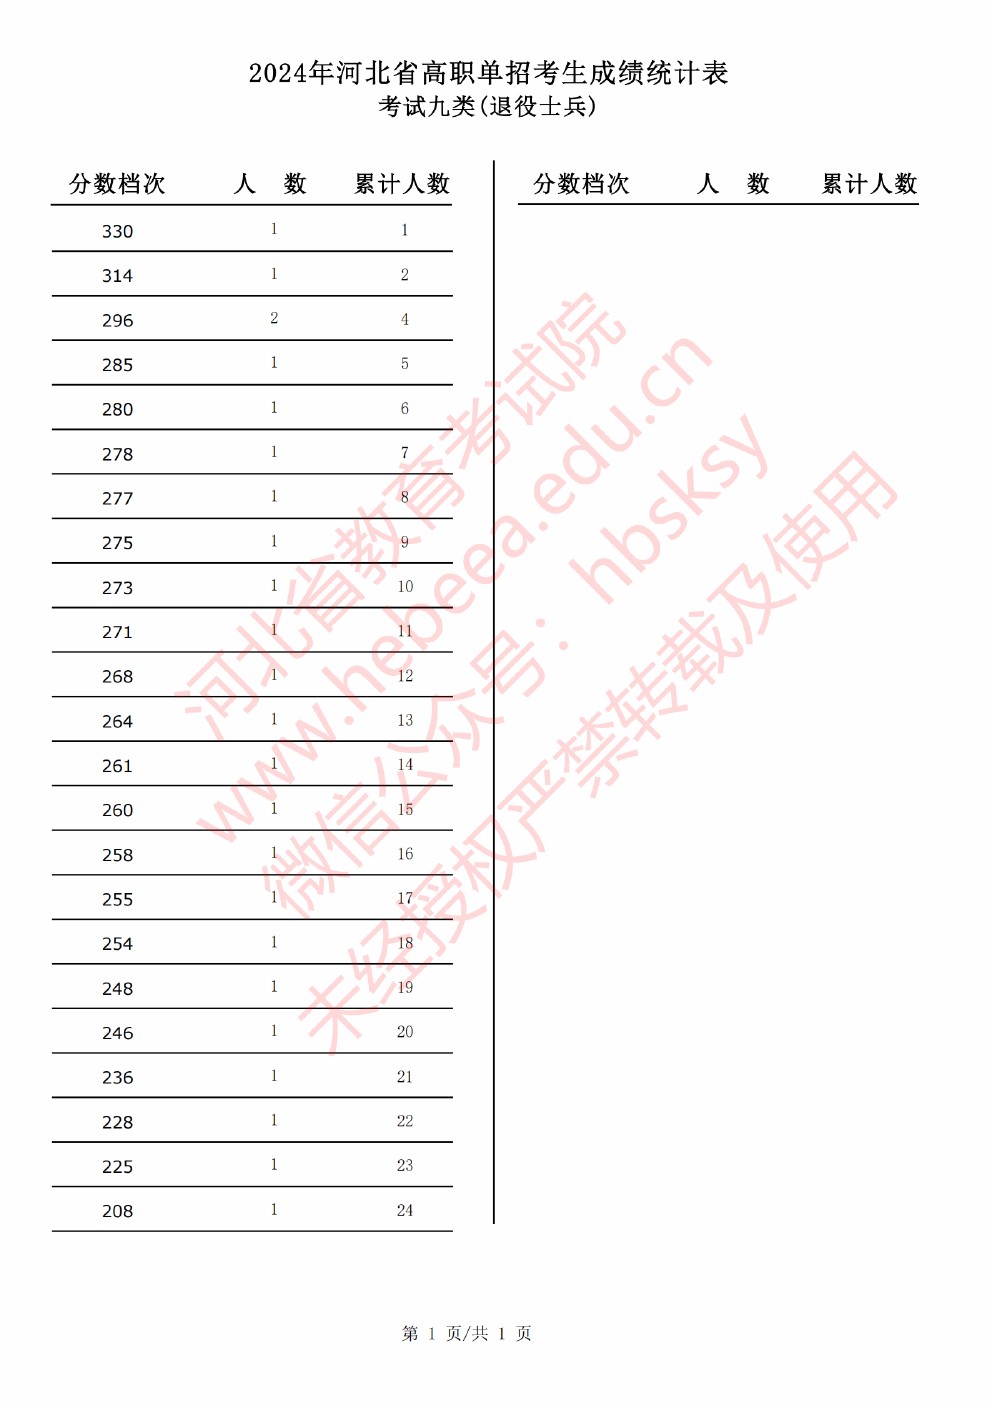 2024年河北省高职单招考试考试九类（退役士兵）成绩统计表 